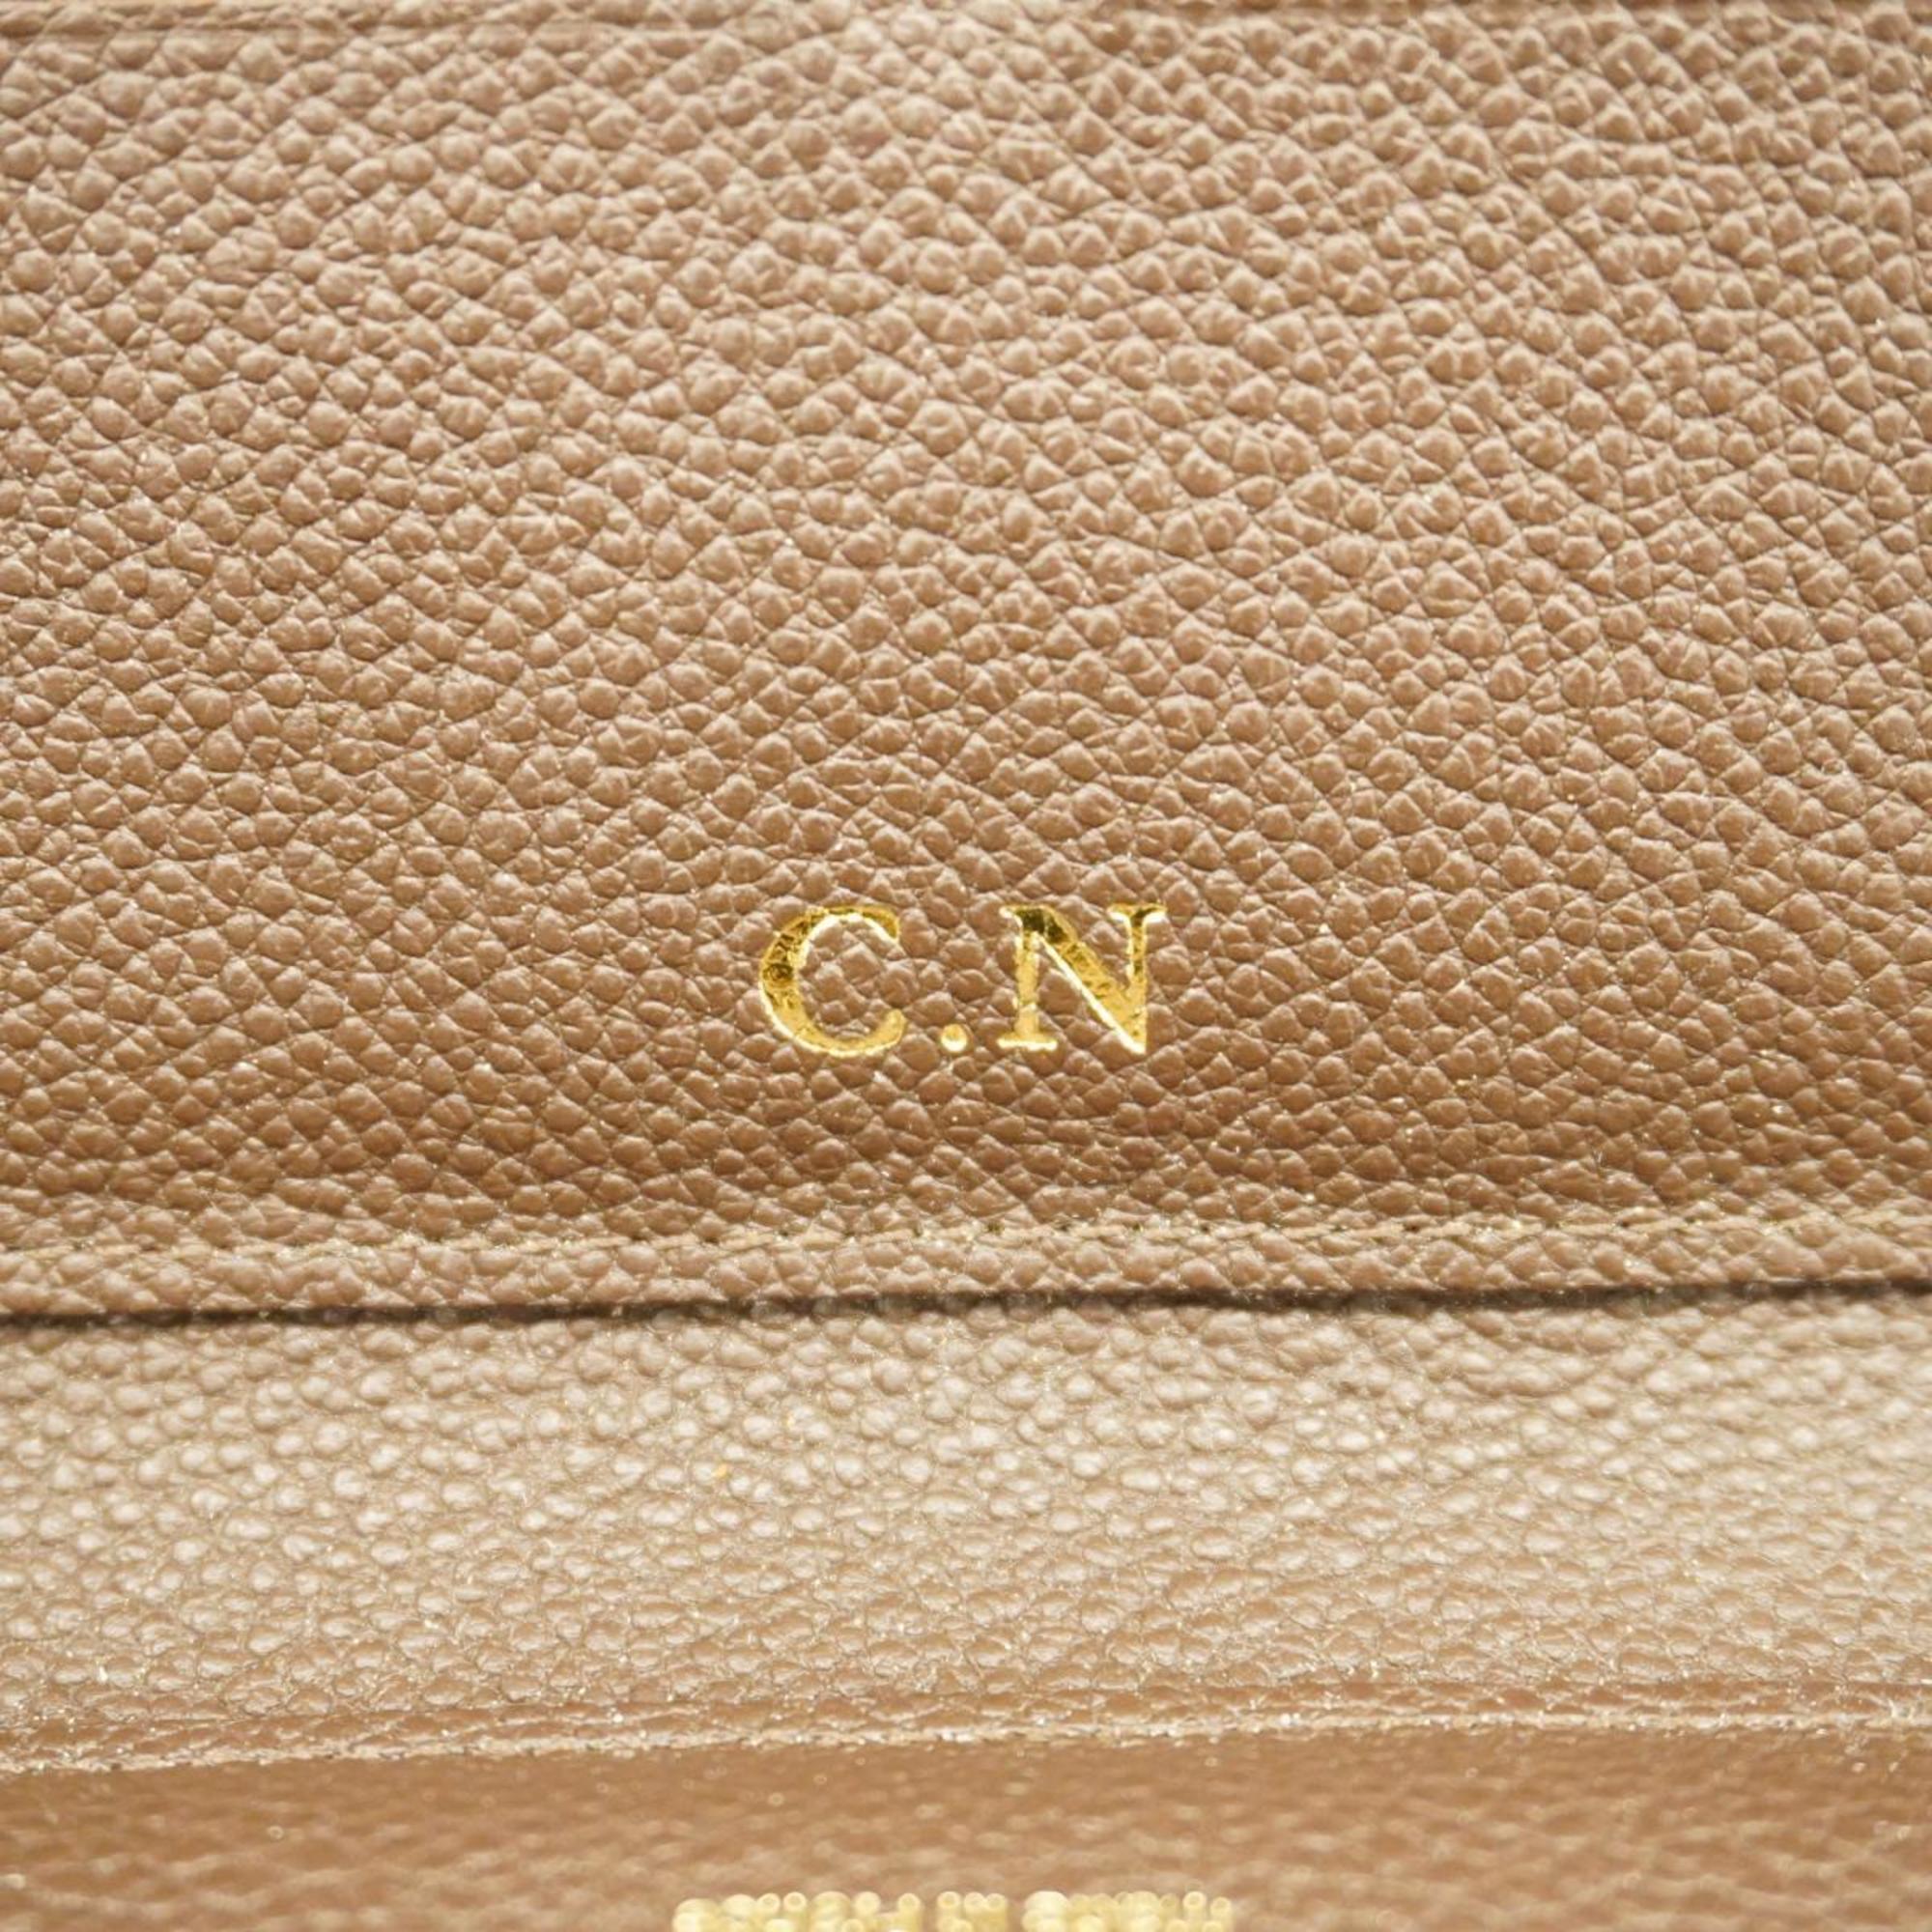 Louis Vuitton Long Wallet Monogram Empreinte Portefeuille Secret M60387 Tail Men's Women's